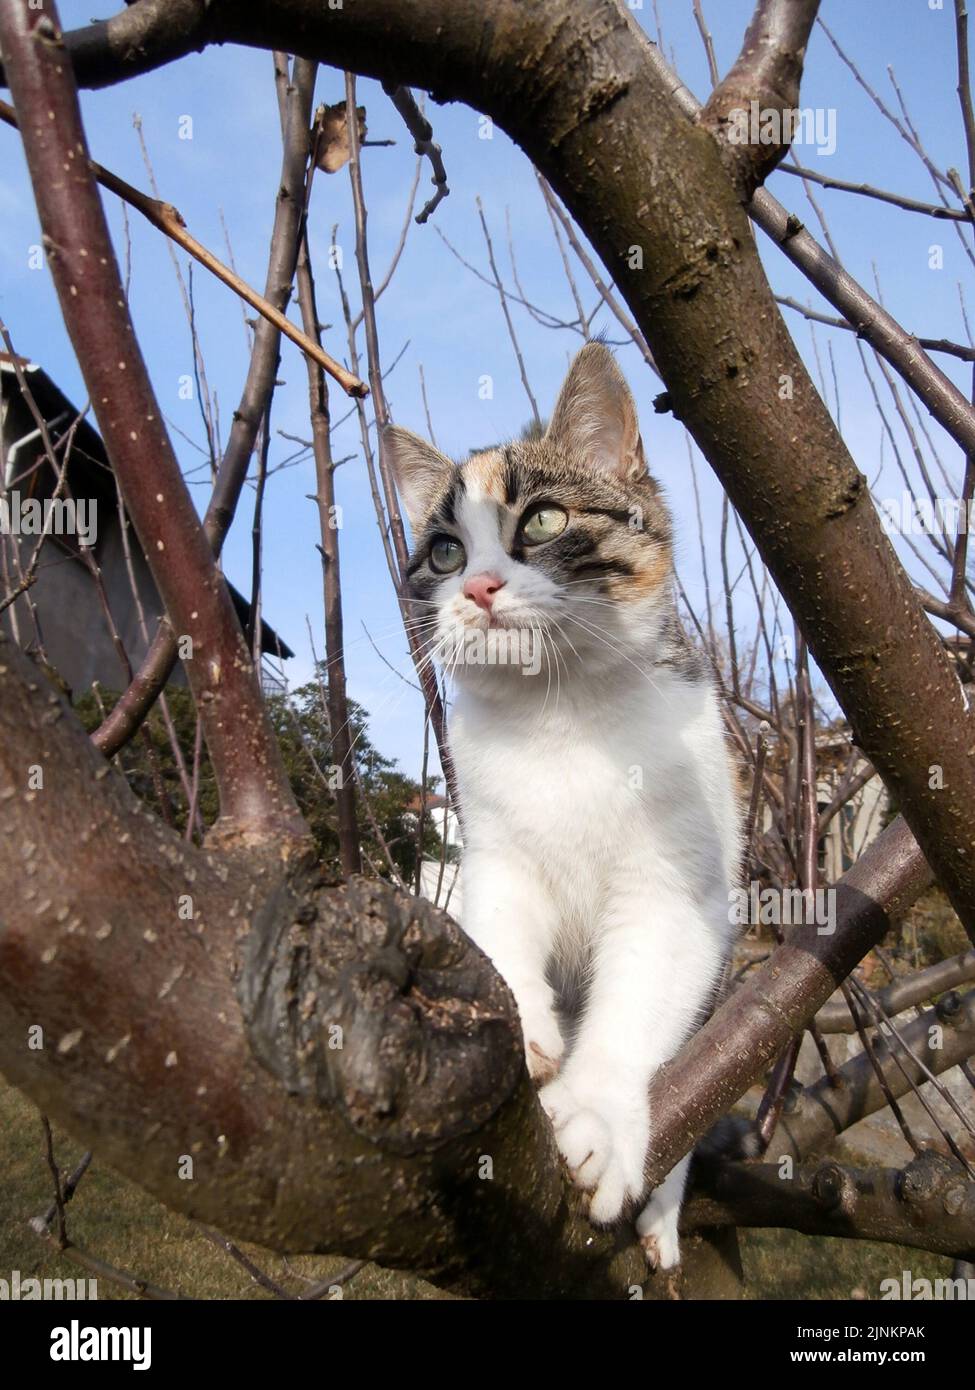 Gattino sull'albero Stock Photo